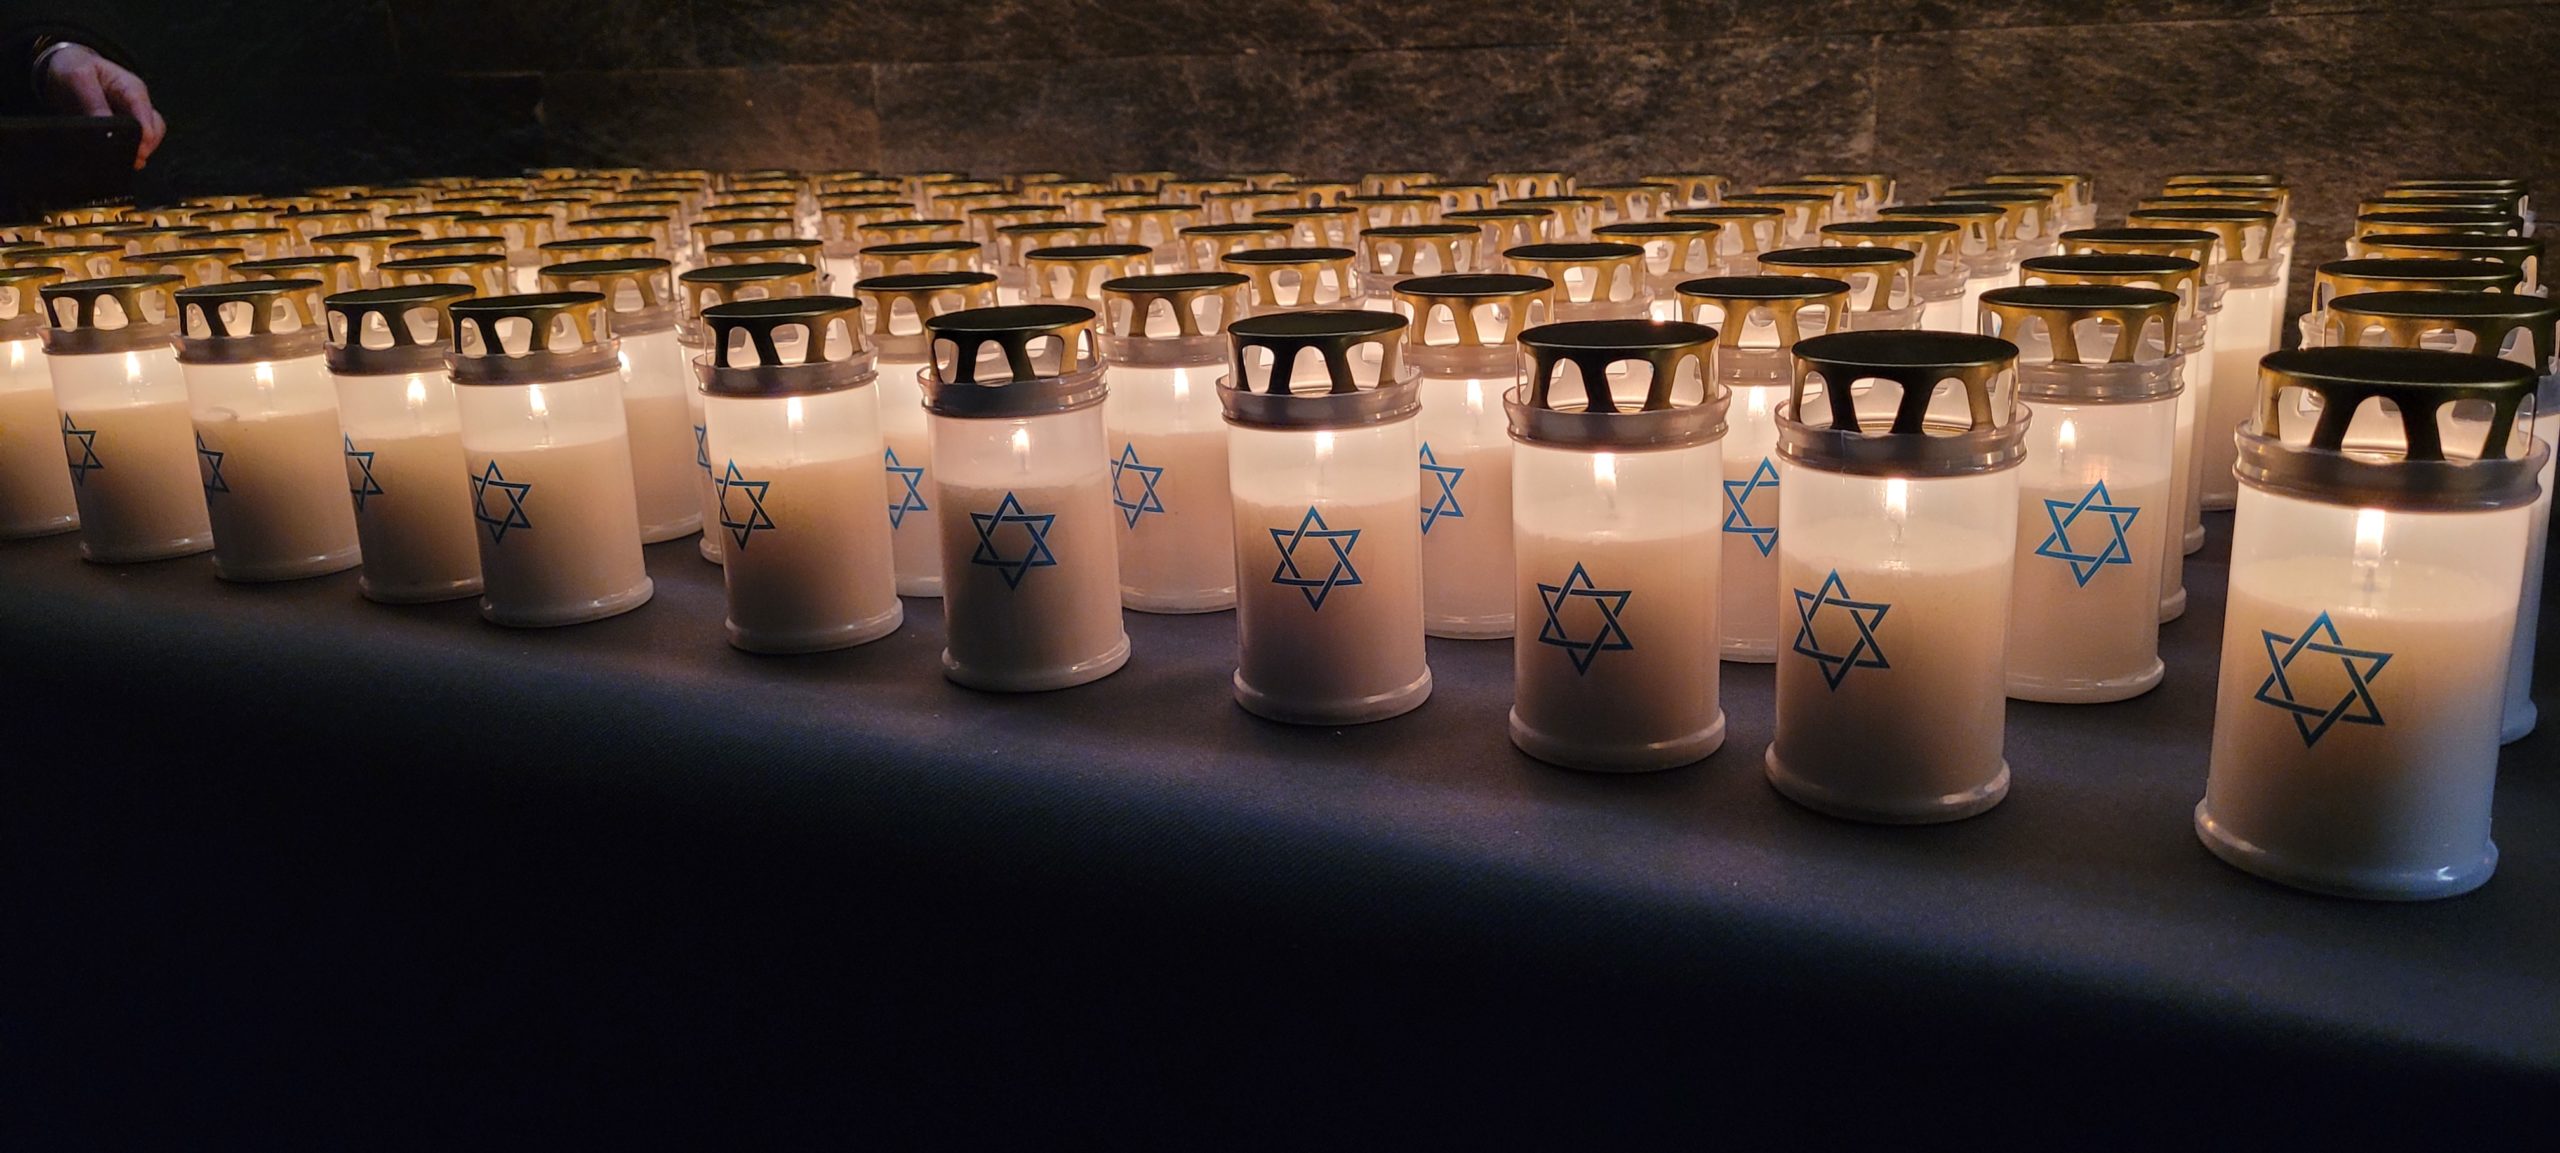 Mémorial de la Shoah, journée internationale à la mémoire des victimes de la Shoah et pour la prévention des crimes contre l’humanité